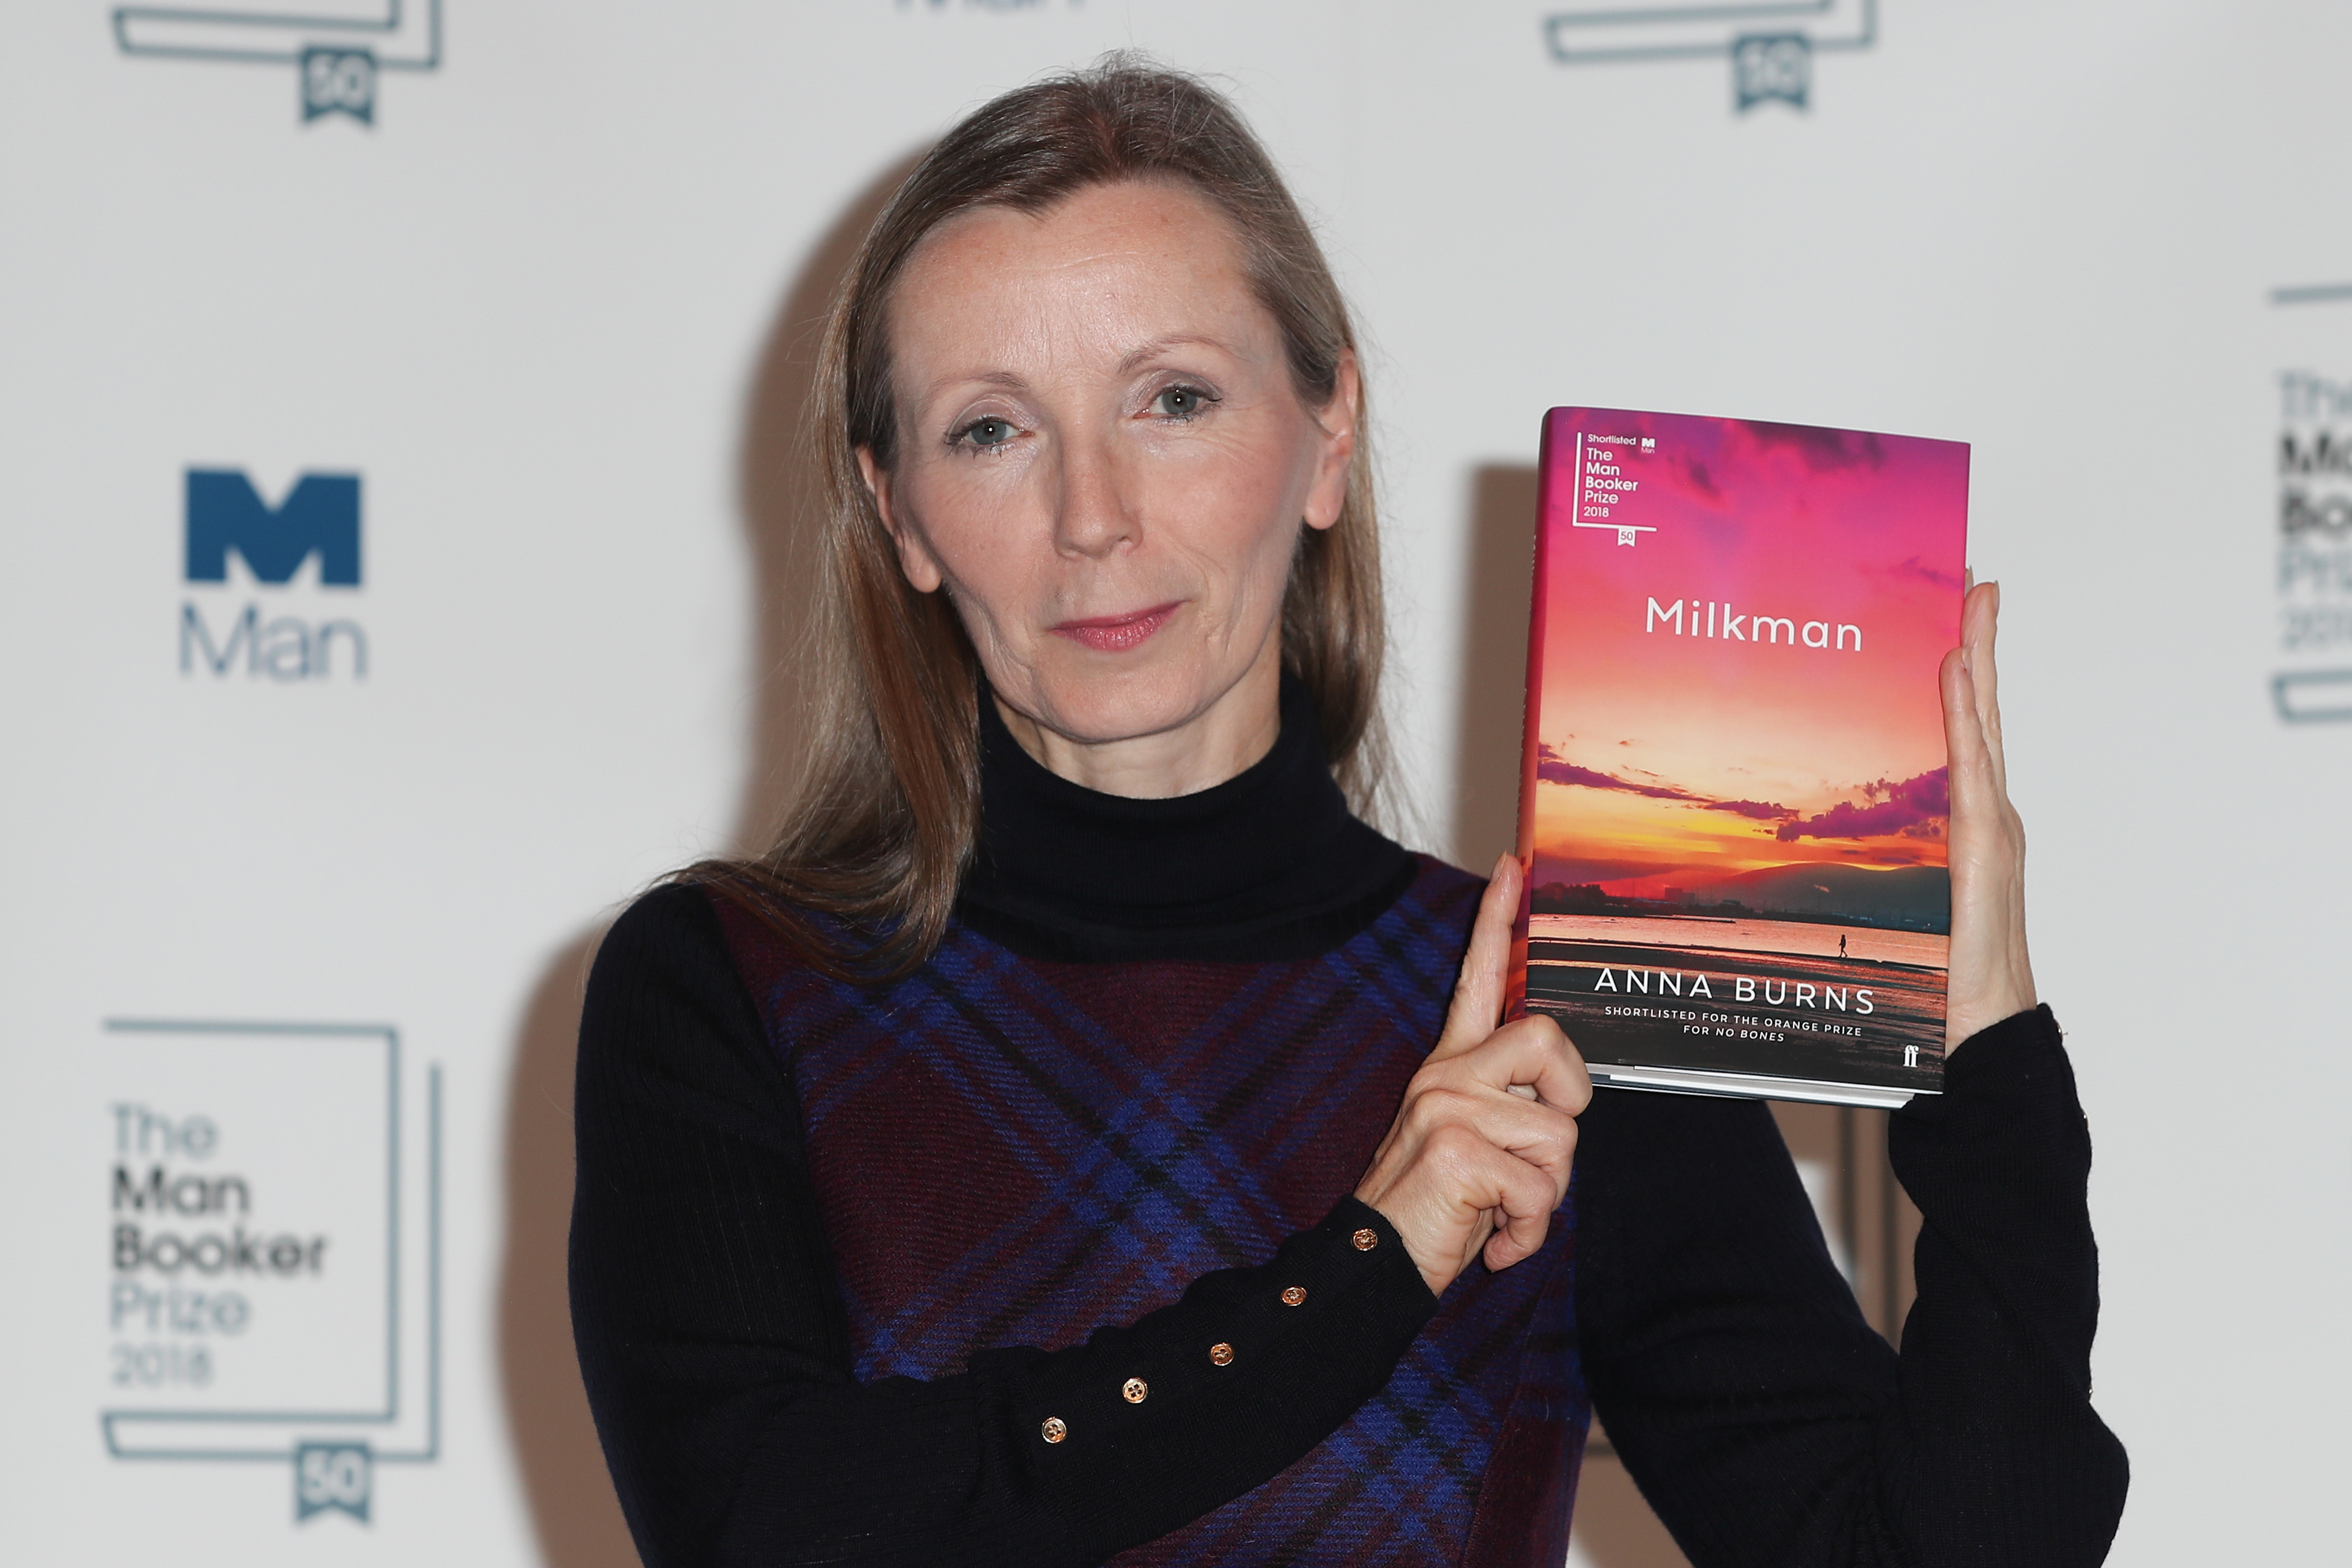 Északír nő regénye nyerte az egyik legrangosabb irodalmi díjat